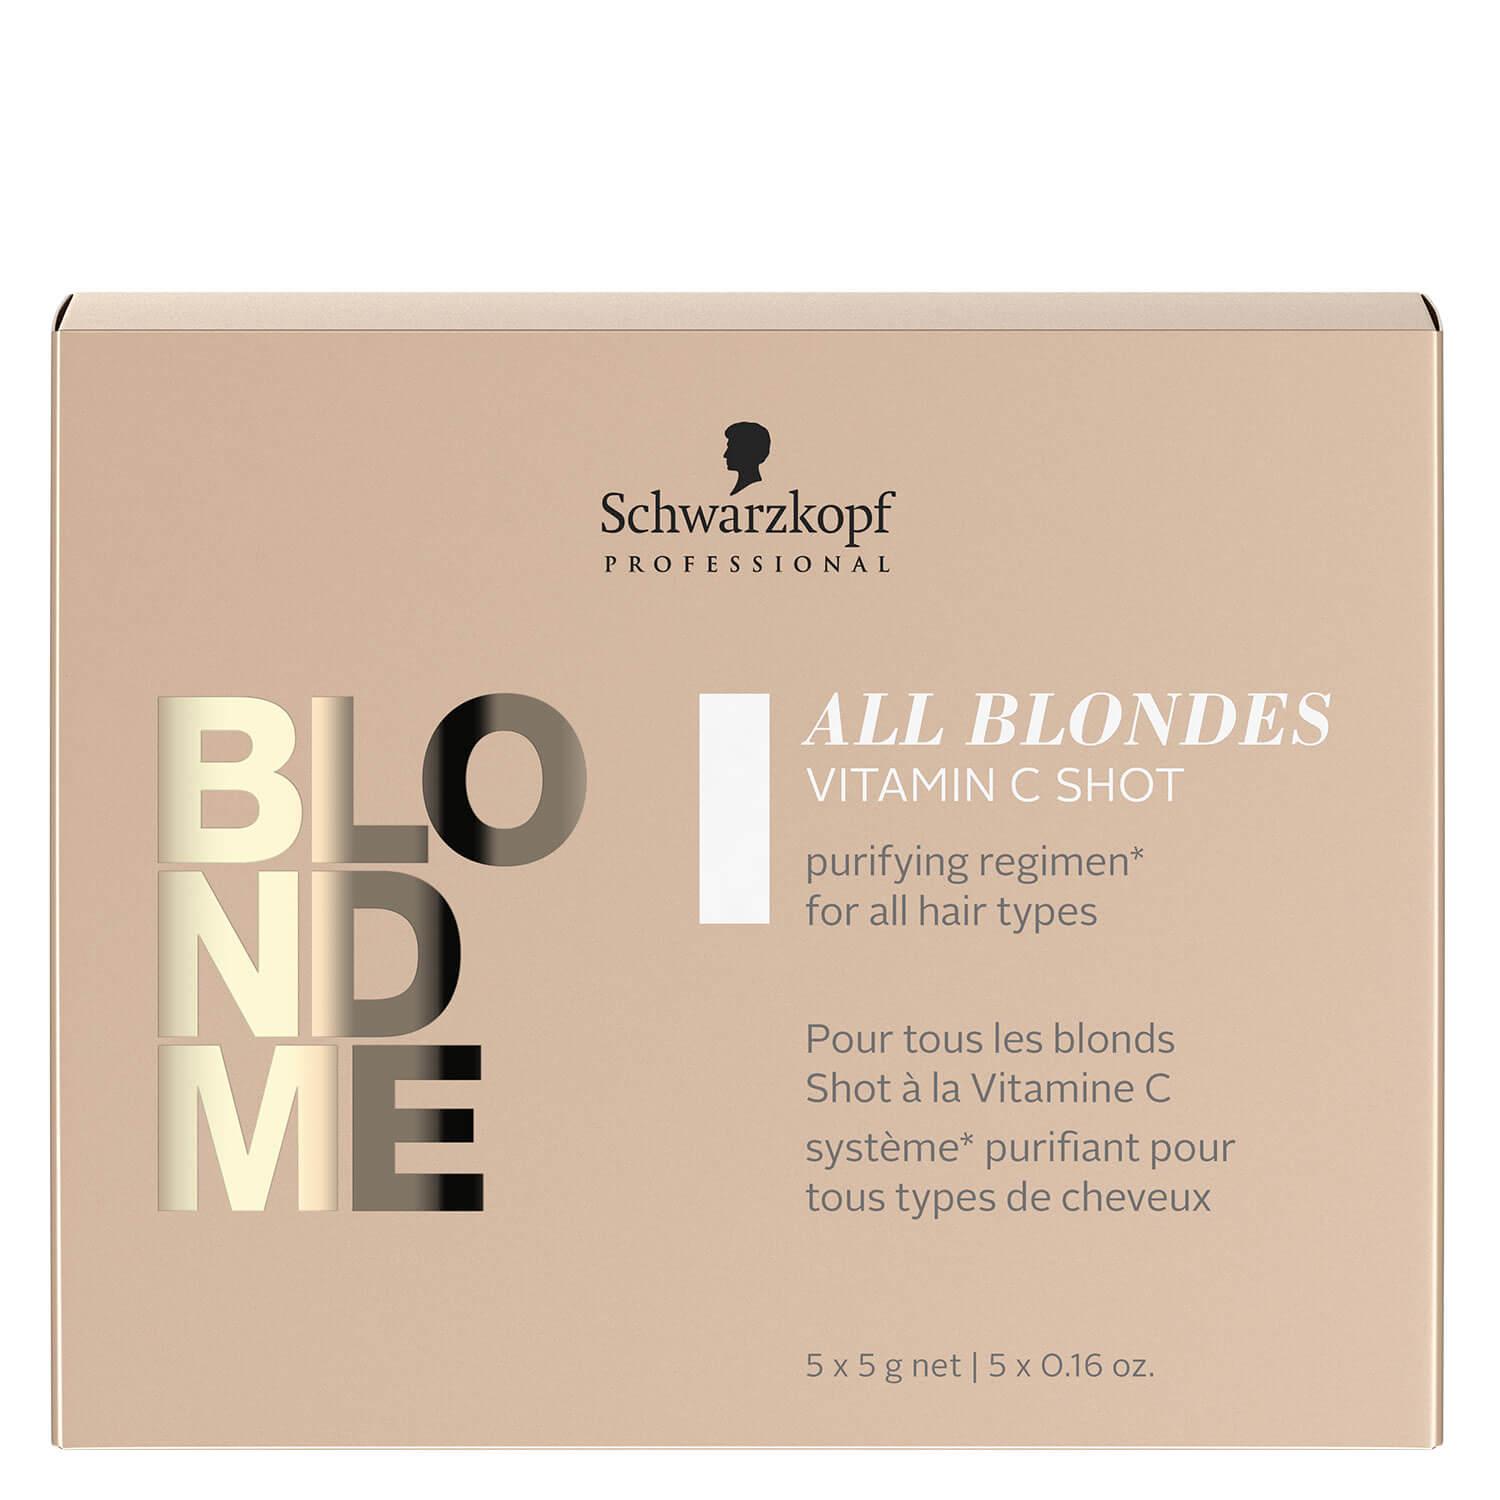 Blondme - All Blondes Detox Vitamin C Shots